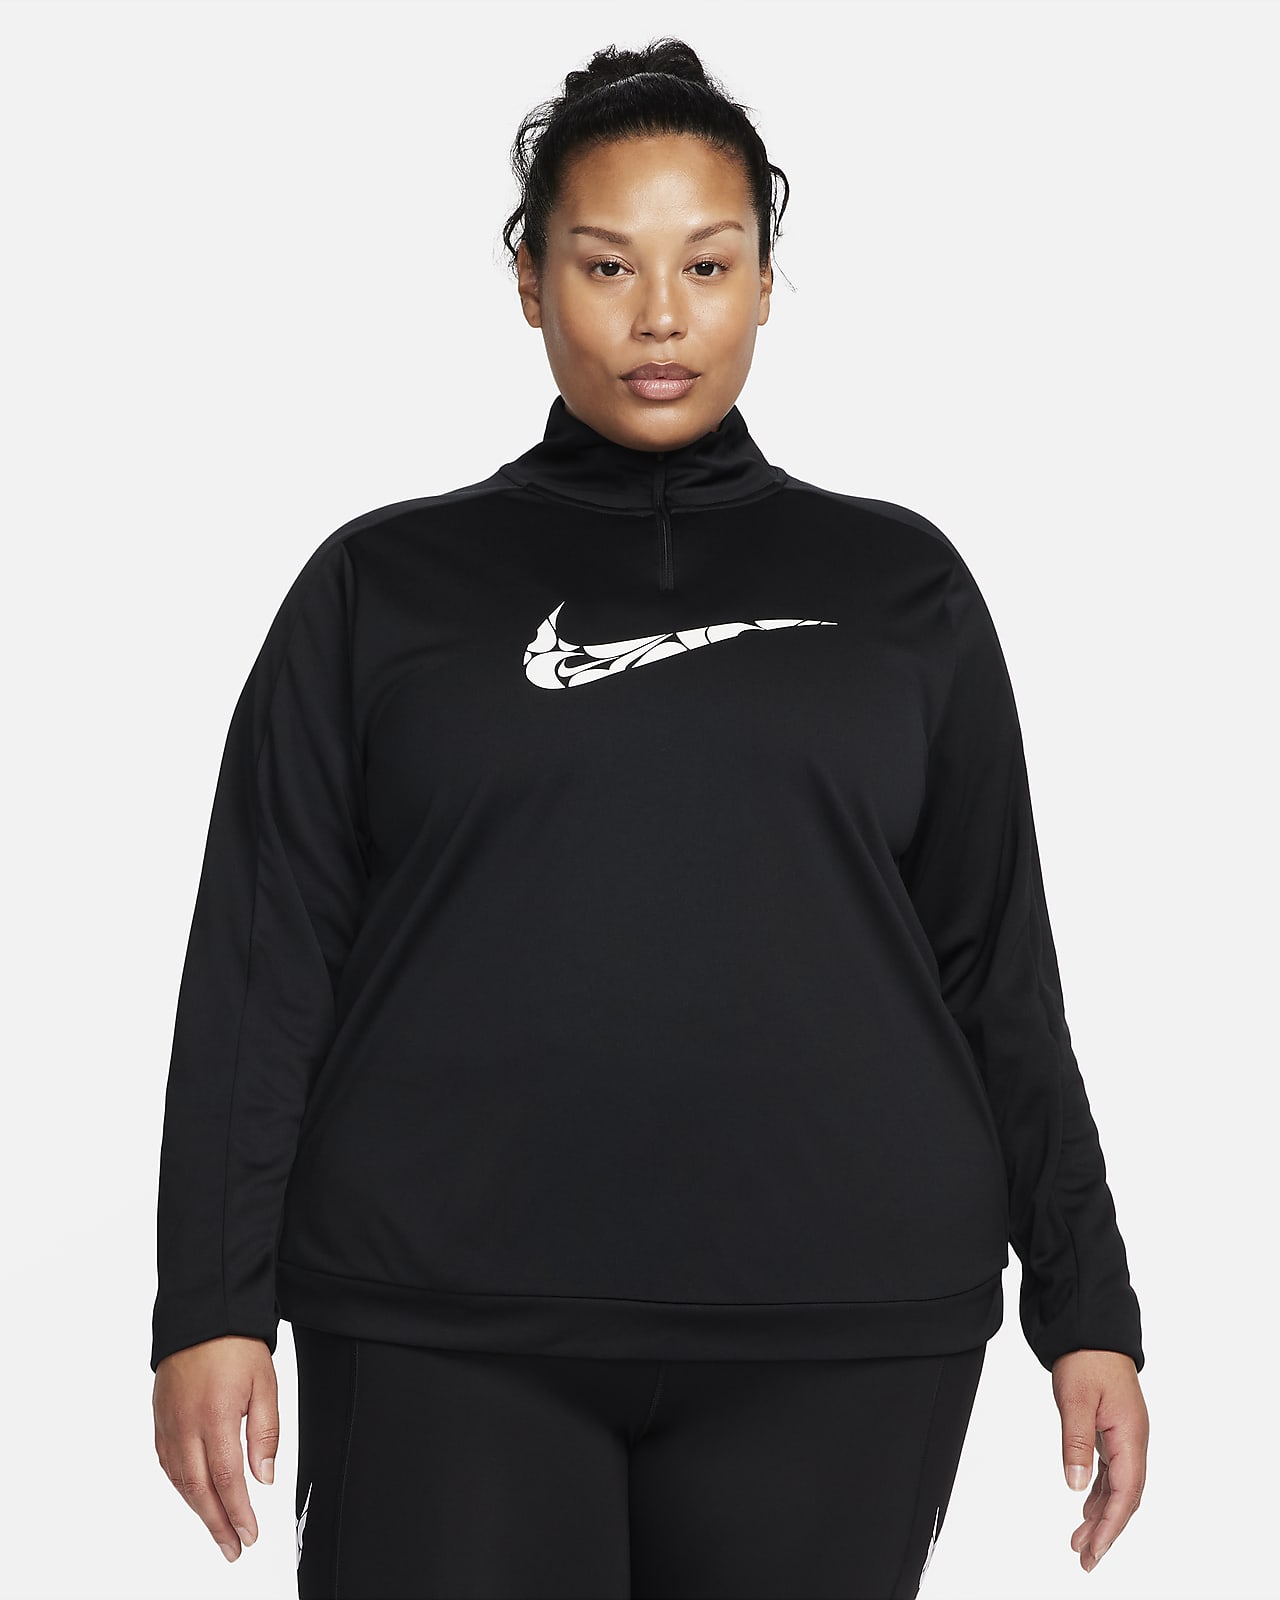 Γυναικεία ενδιάμεση μπλούζα Dri-FIT με φερμουάρ στο 1/4 του μήκους Nike Swoosh (μεγάλα μεγέθη)